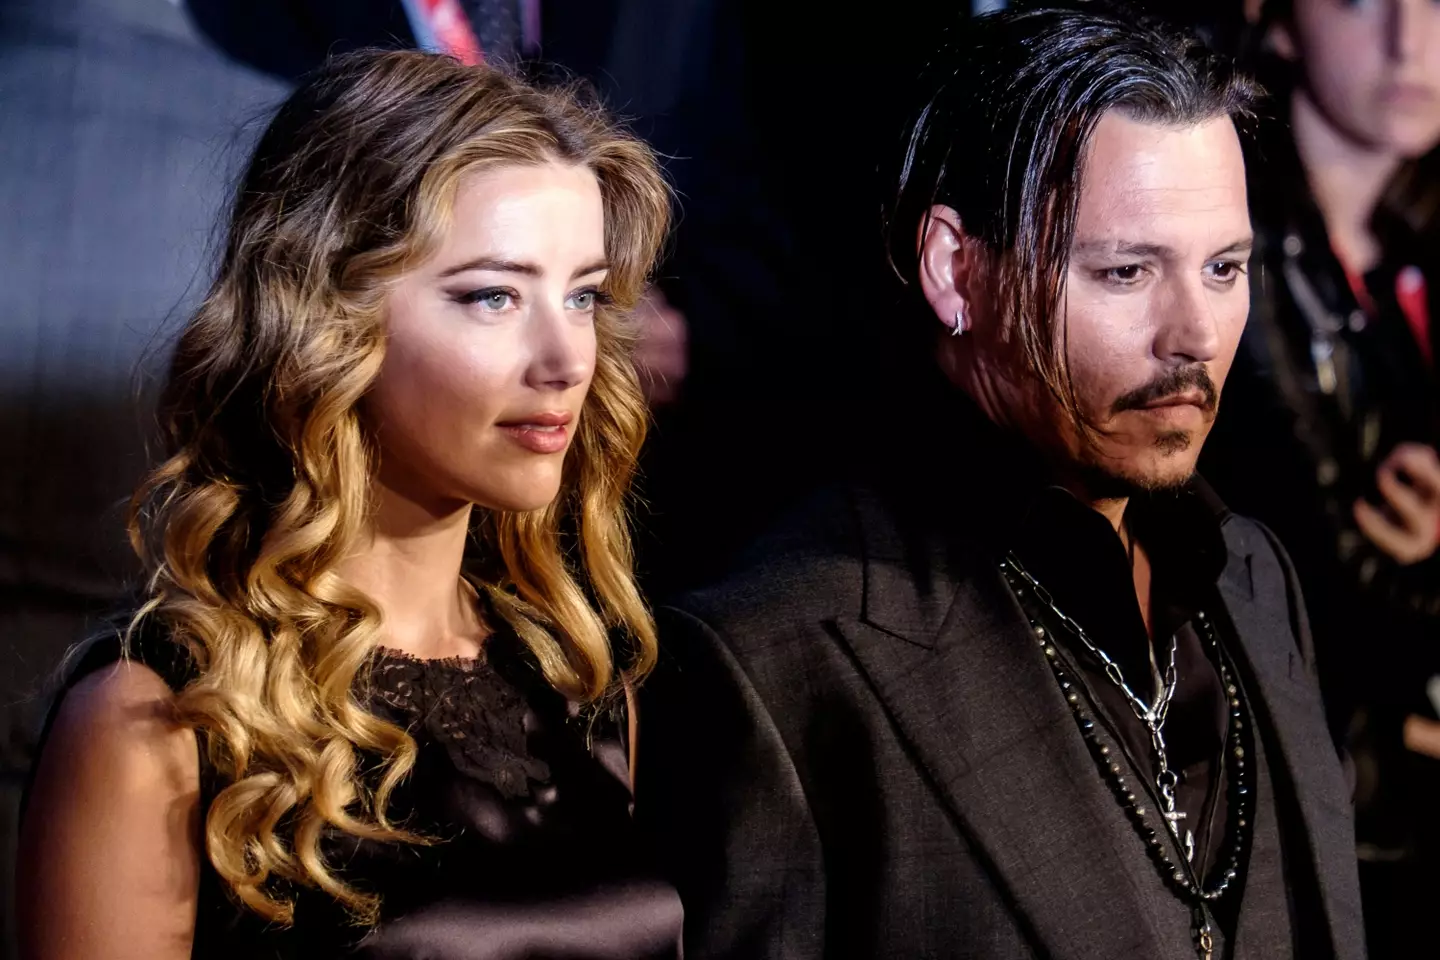 Depp is seeking $50m in defamation from Amber Heard.